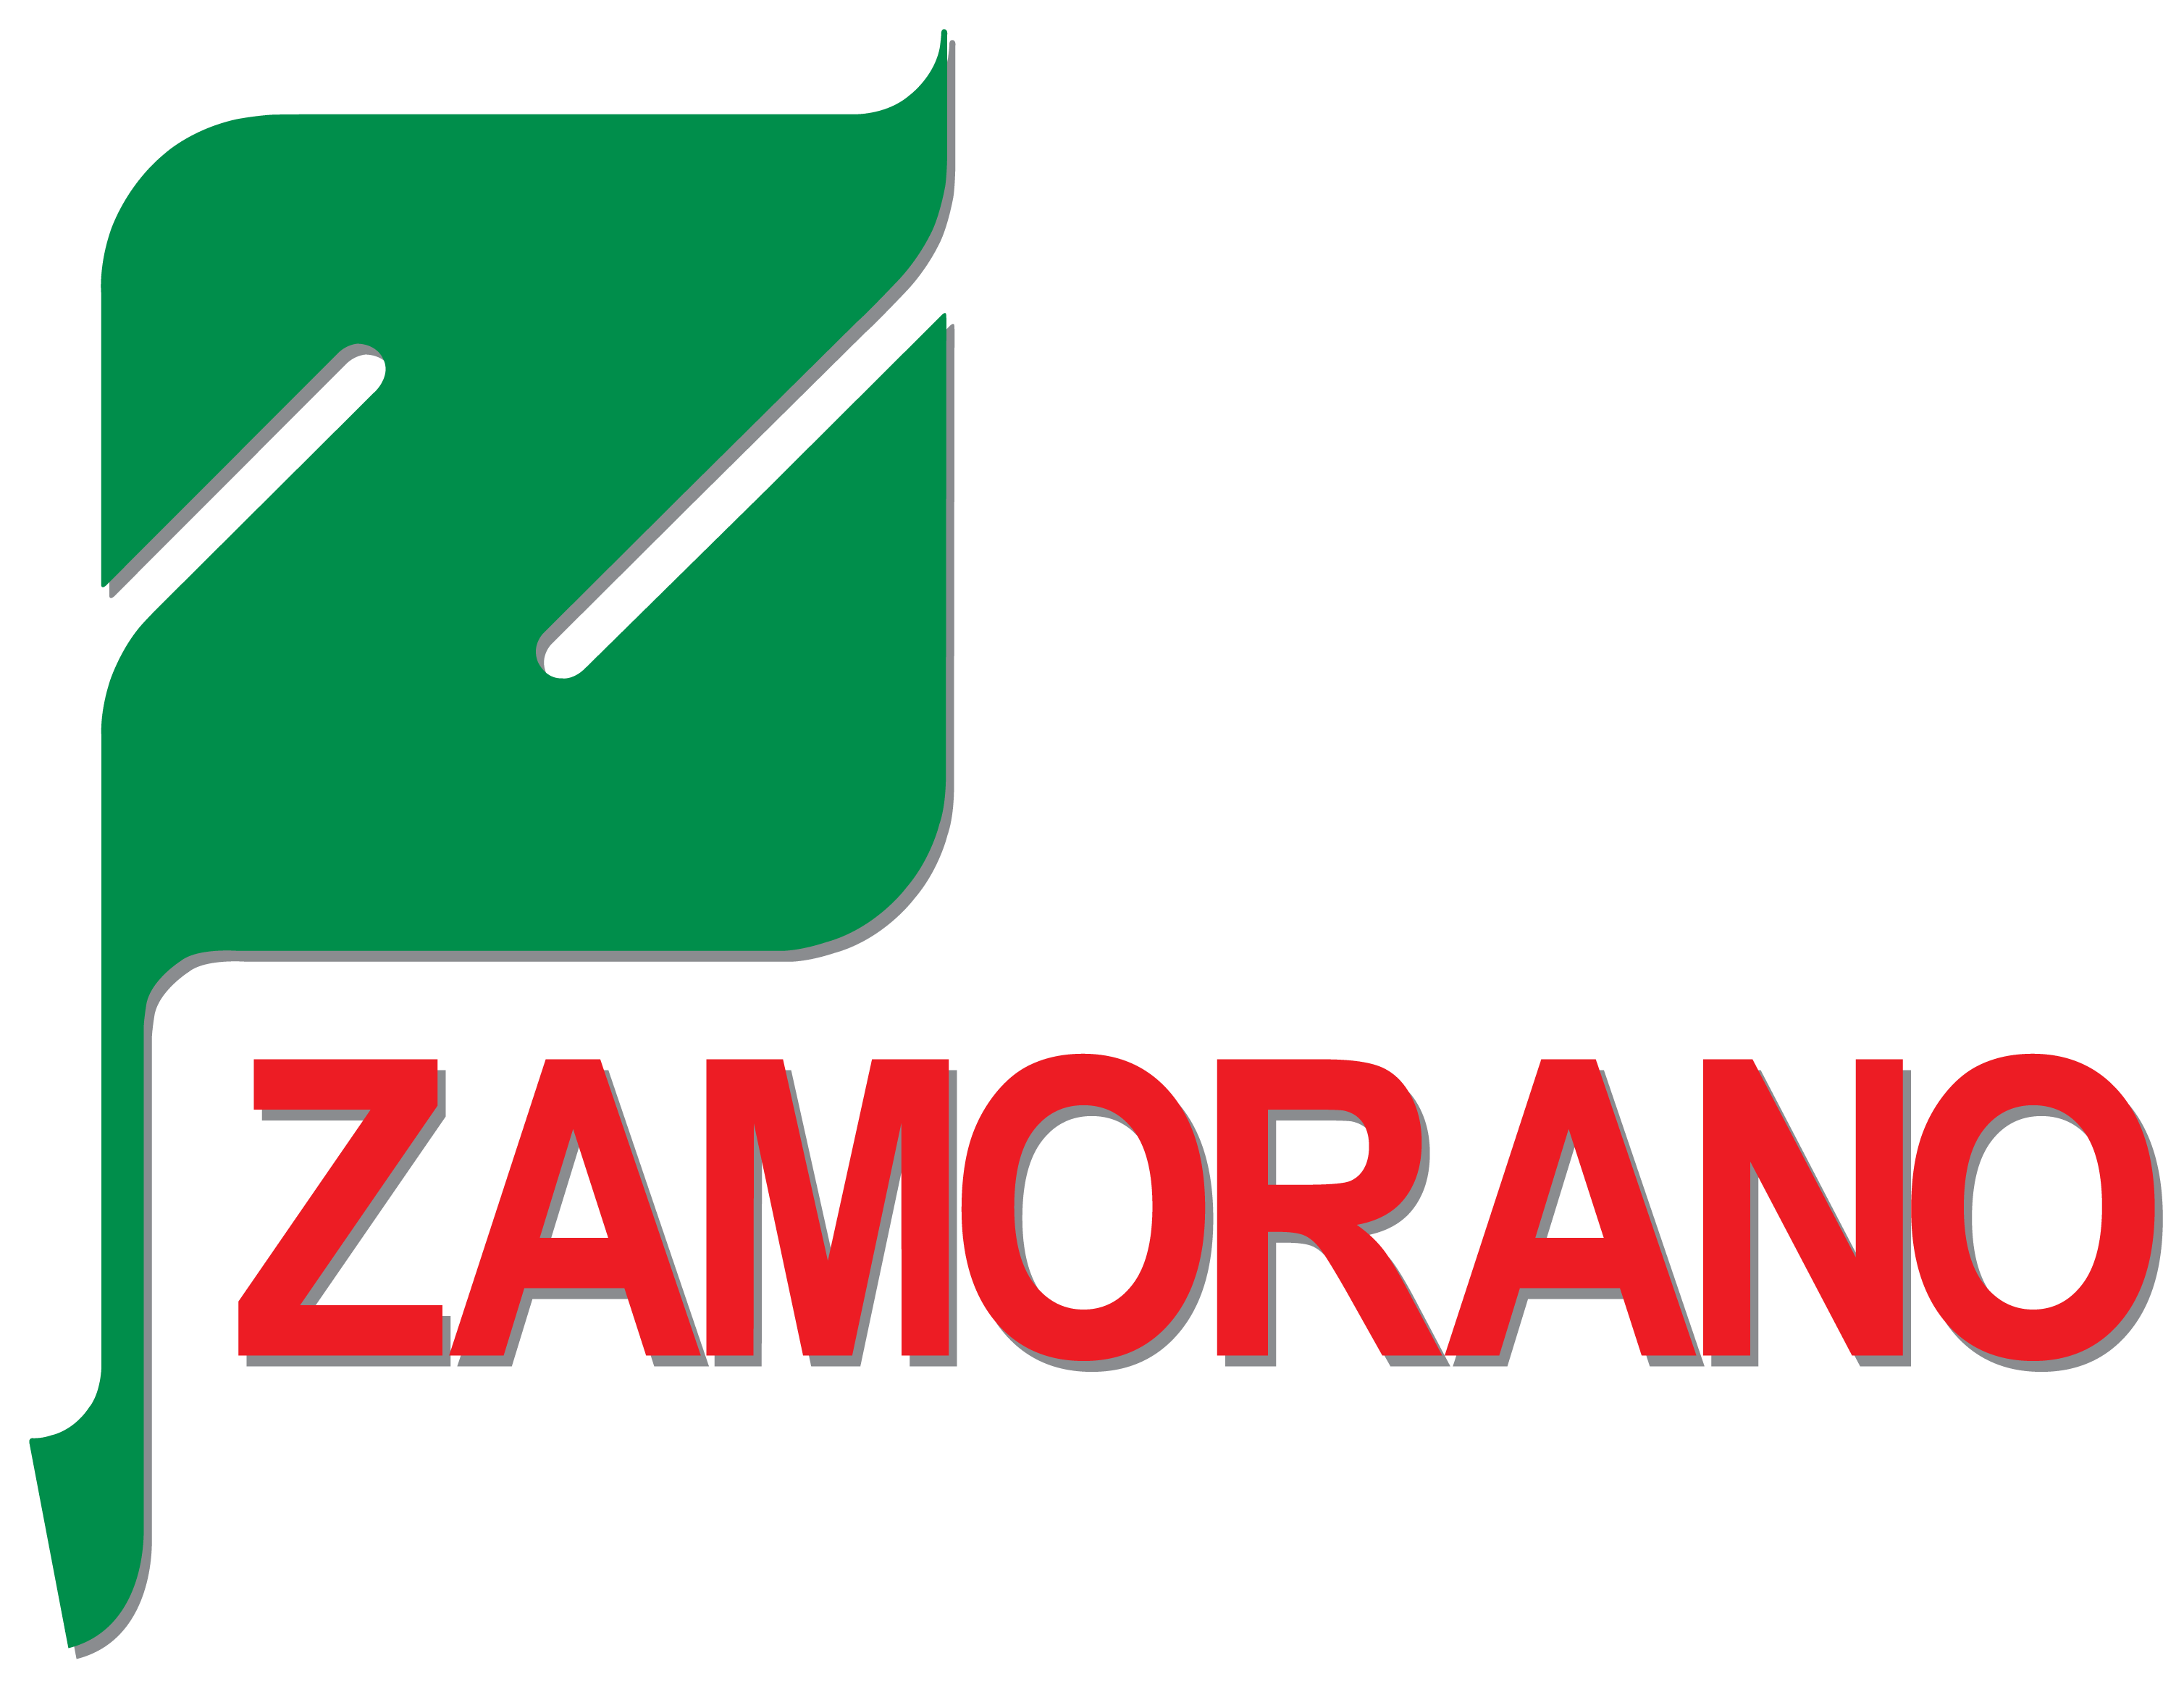 Zamorano logo